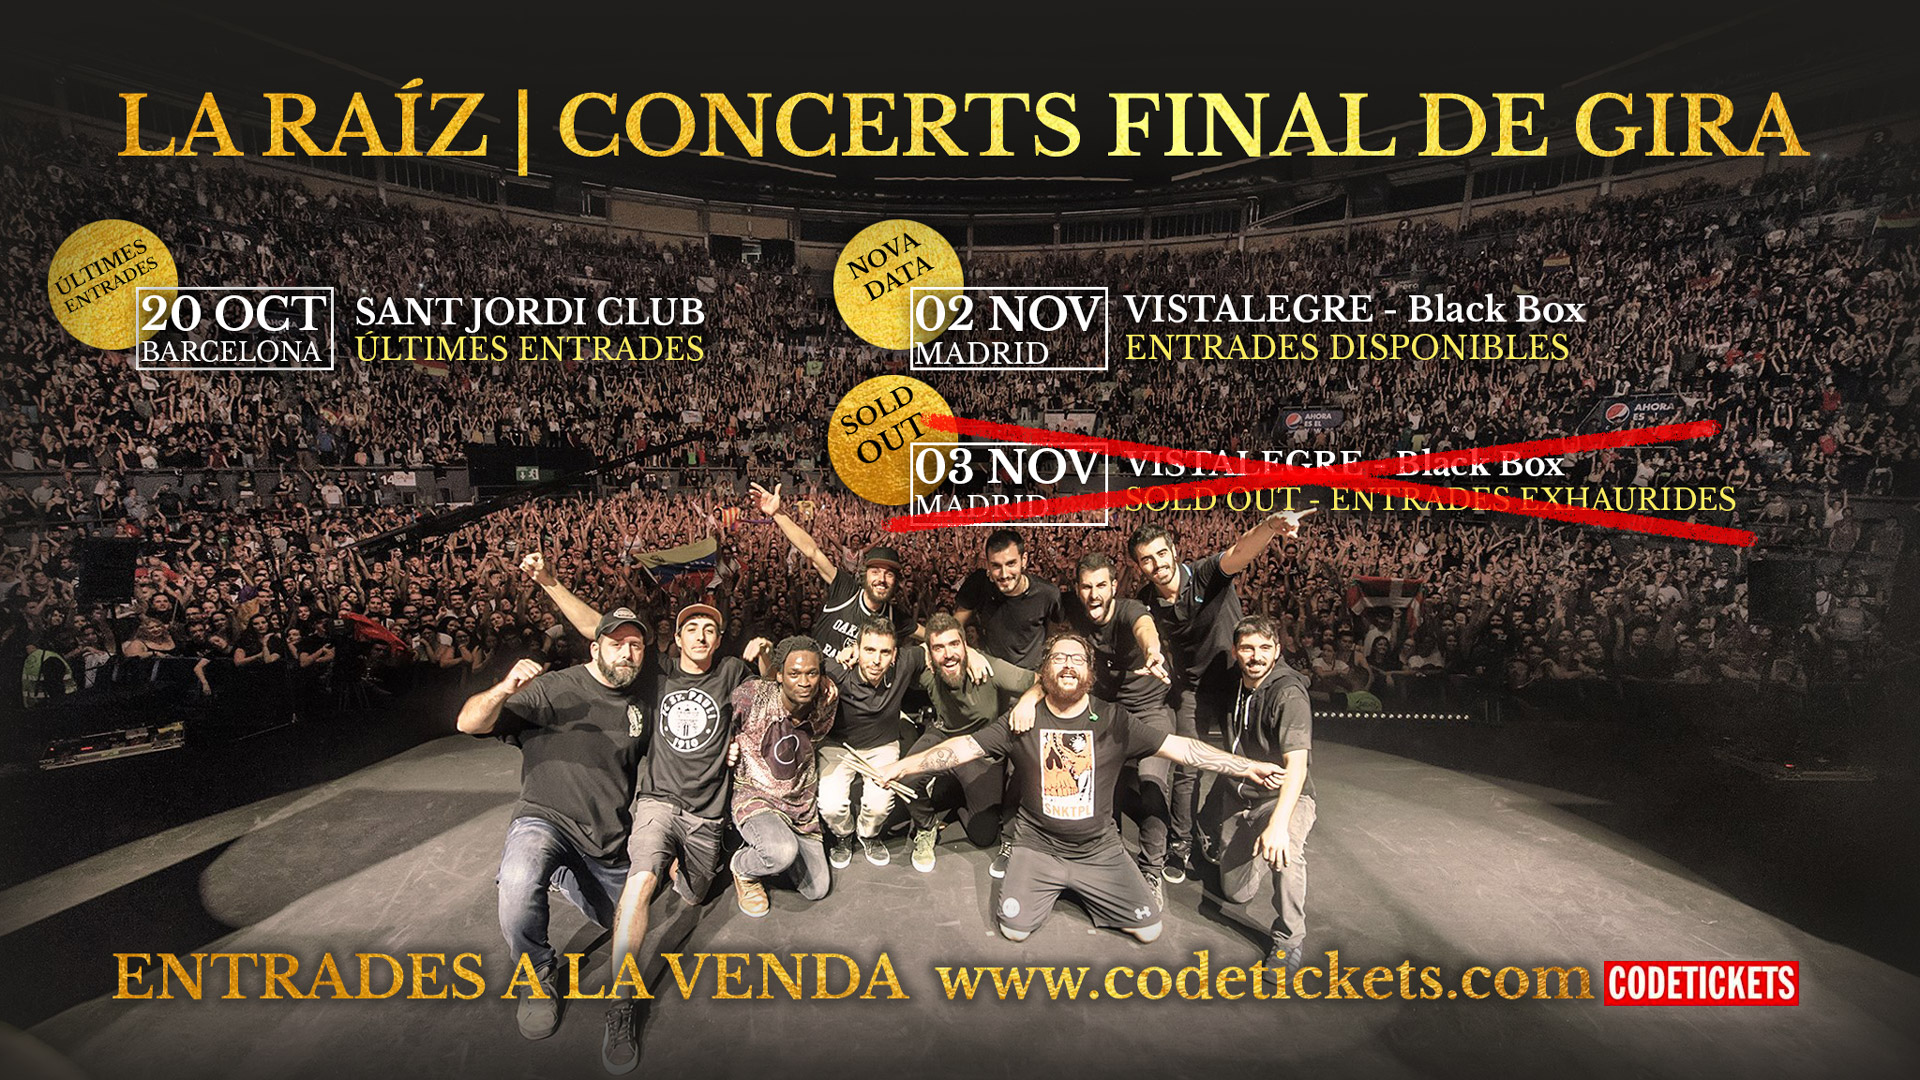 La Raíz esgota en 3 hores totes les entrades pel concert de comiat a Vistalegre Black Box de Madrid el 3 de Novembre i obre segona data pel dia abans… alerta que les entrades per Barcelona estan volant!